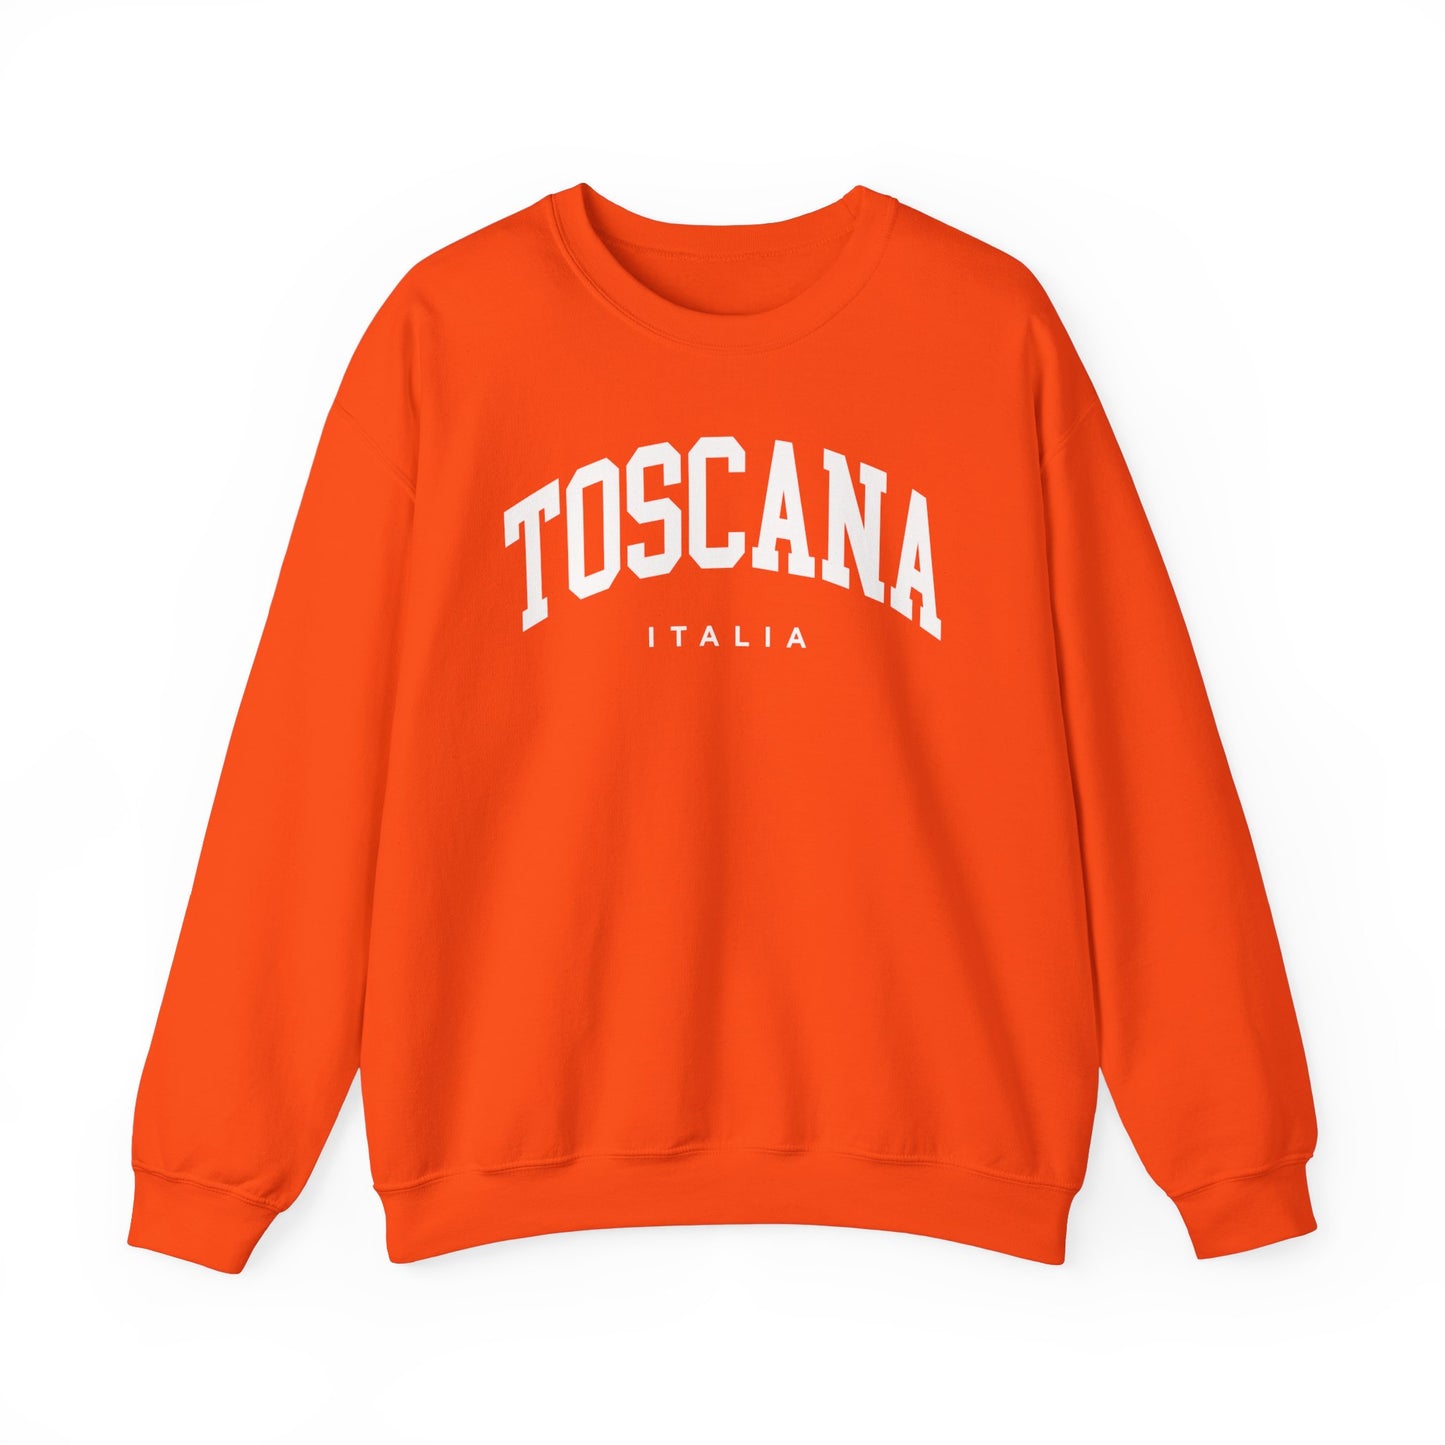 Tuscany Italy Sweatshirt